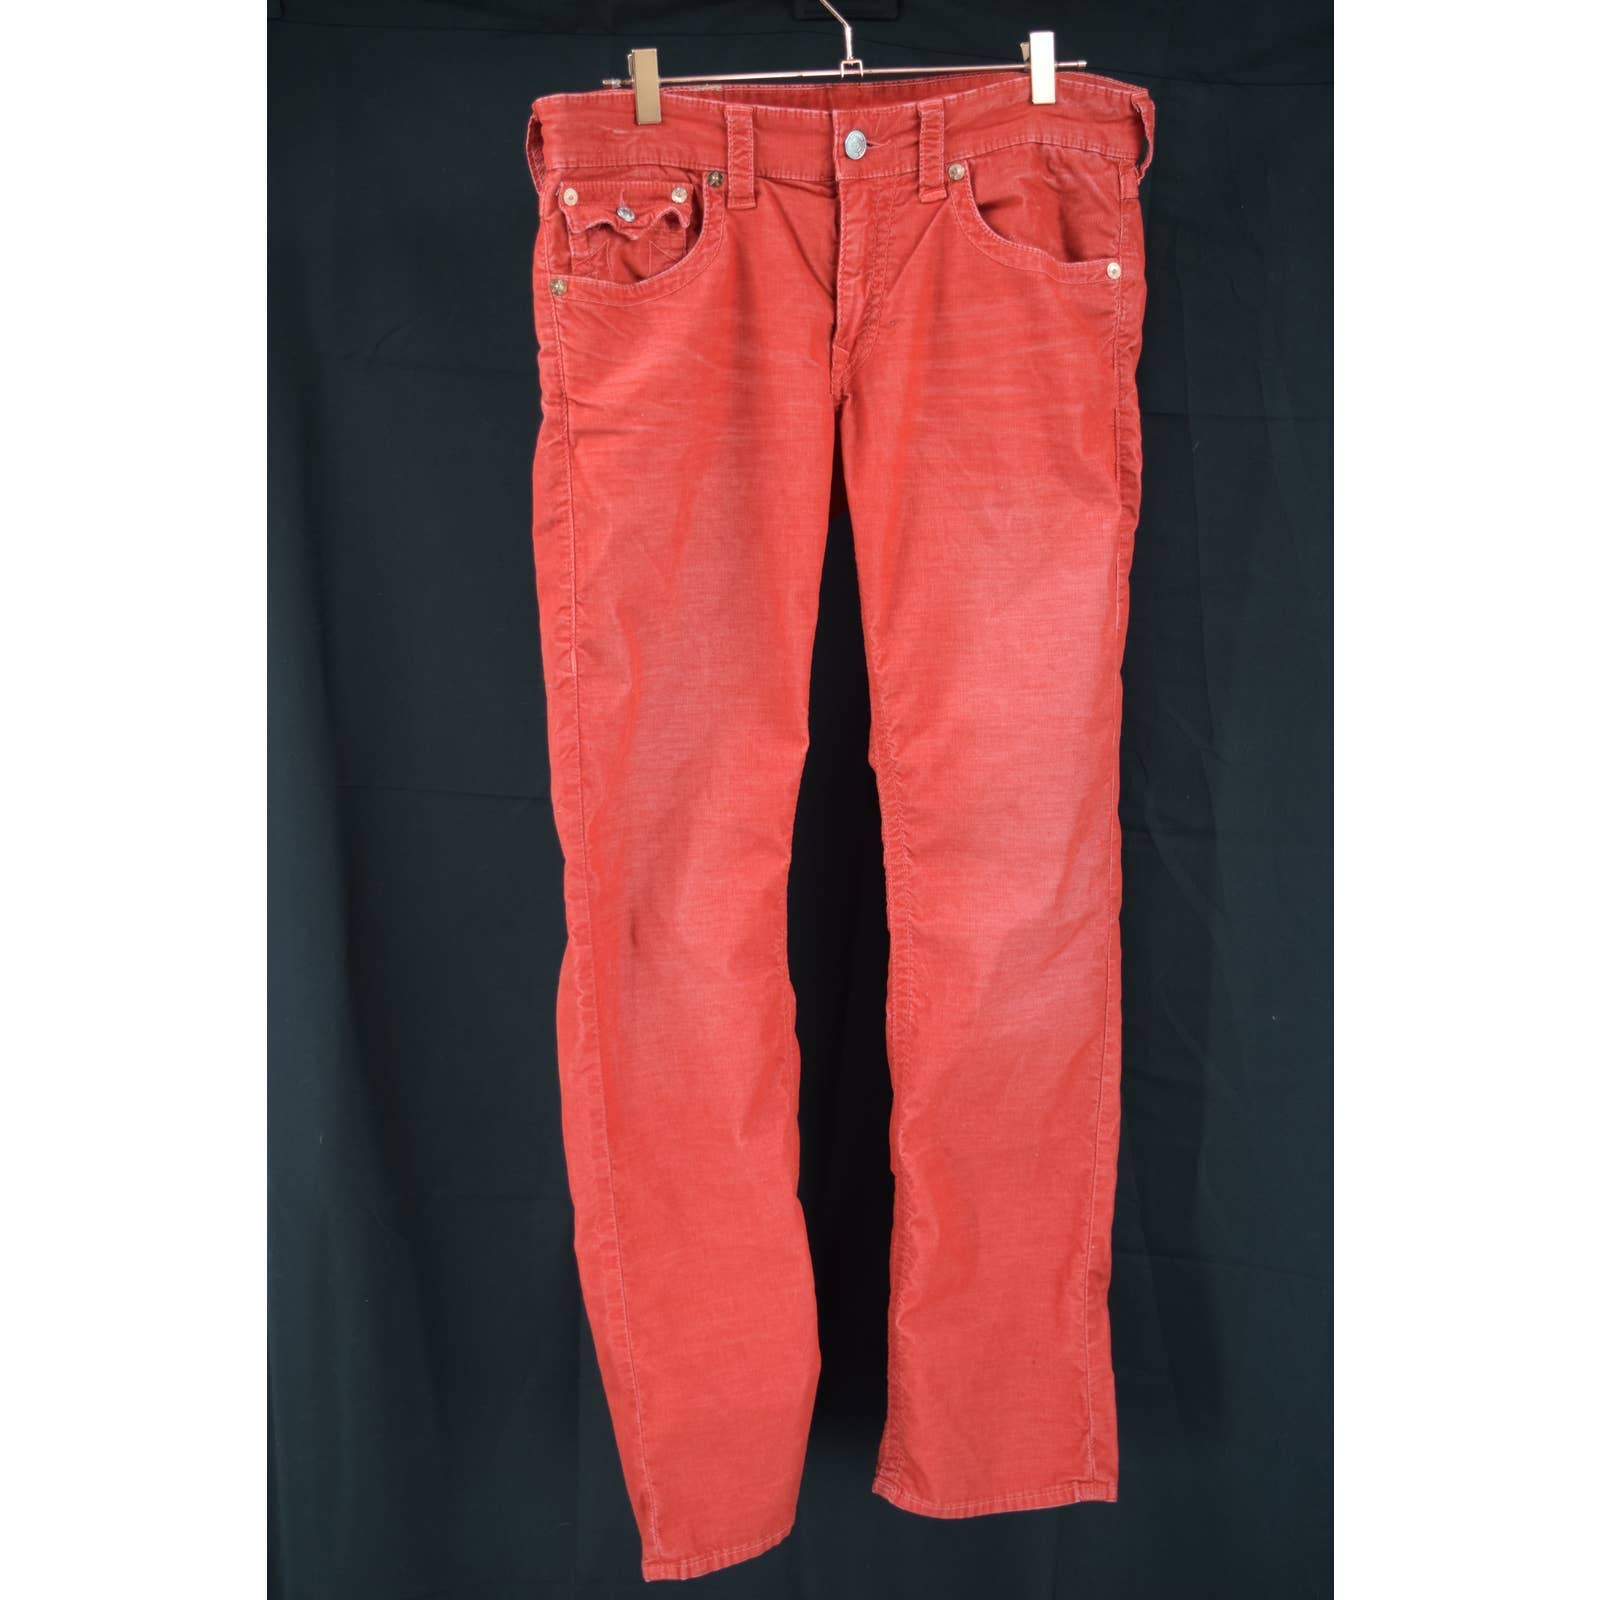 True Religion Red Thin Wale Corduroy Jean Cut Pants - 33